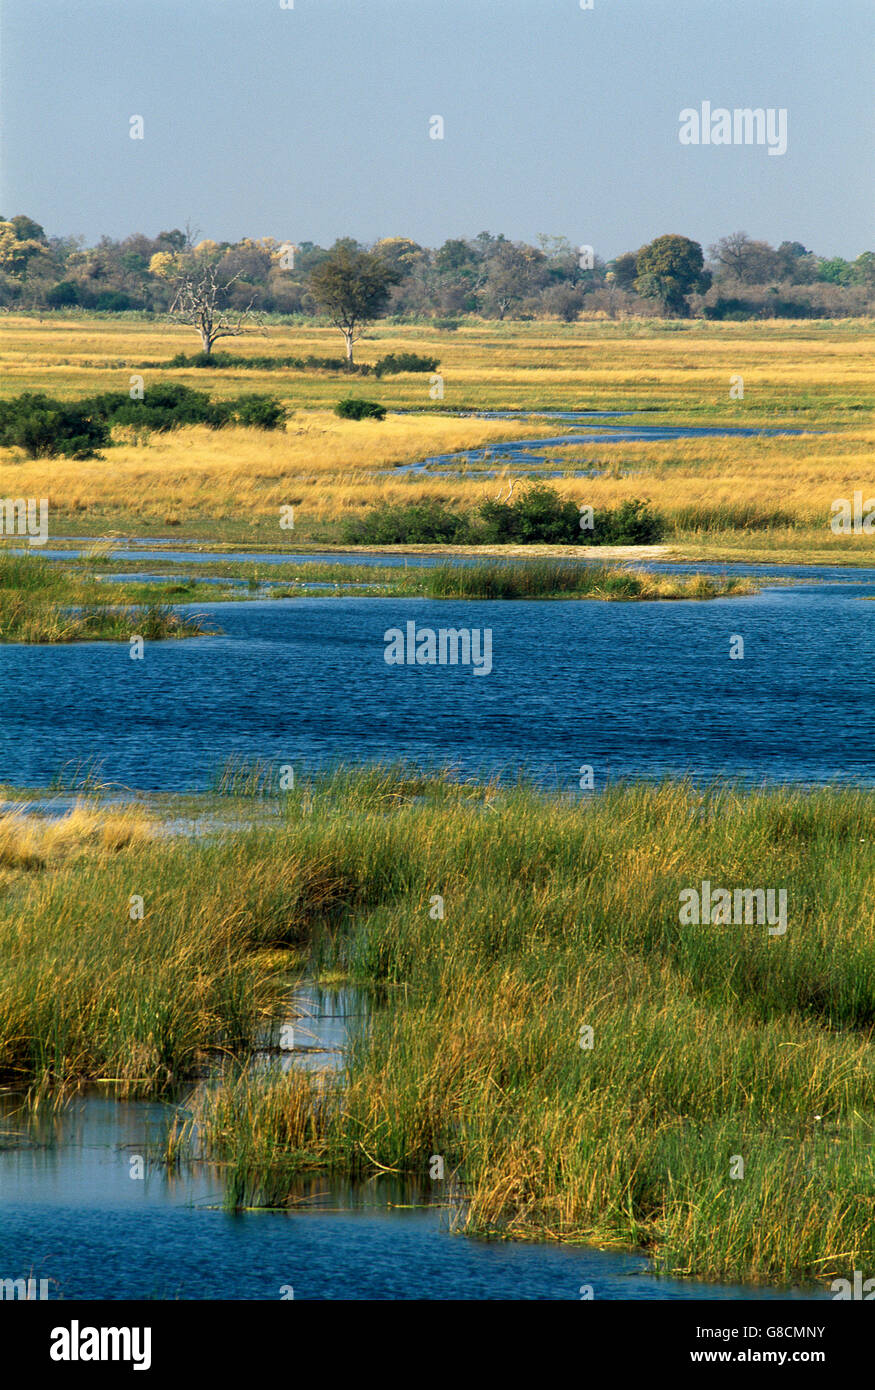 Sabana arbolada en los bancos del río Kwando, Namibia. Foto de stock